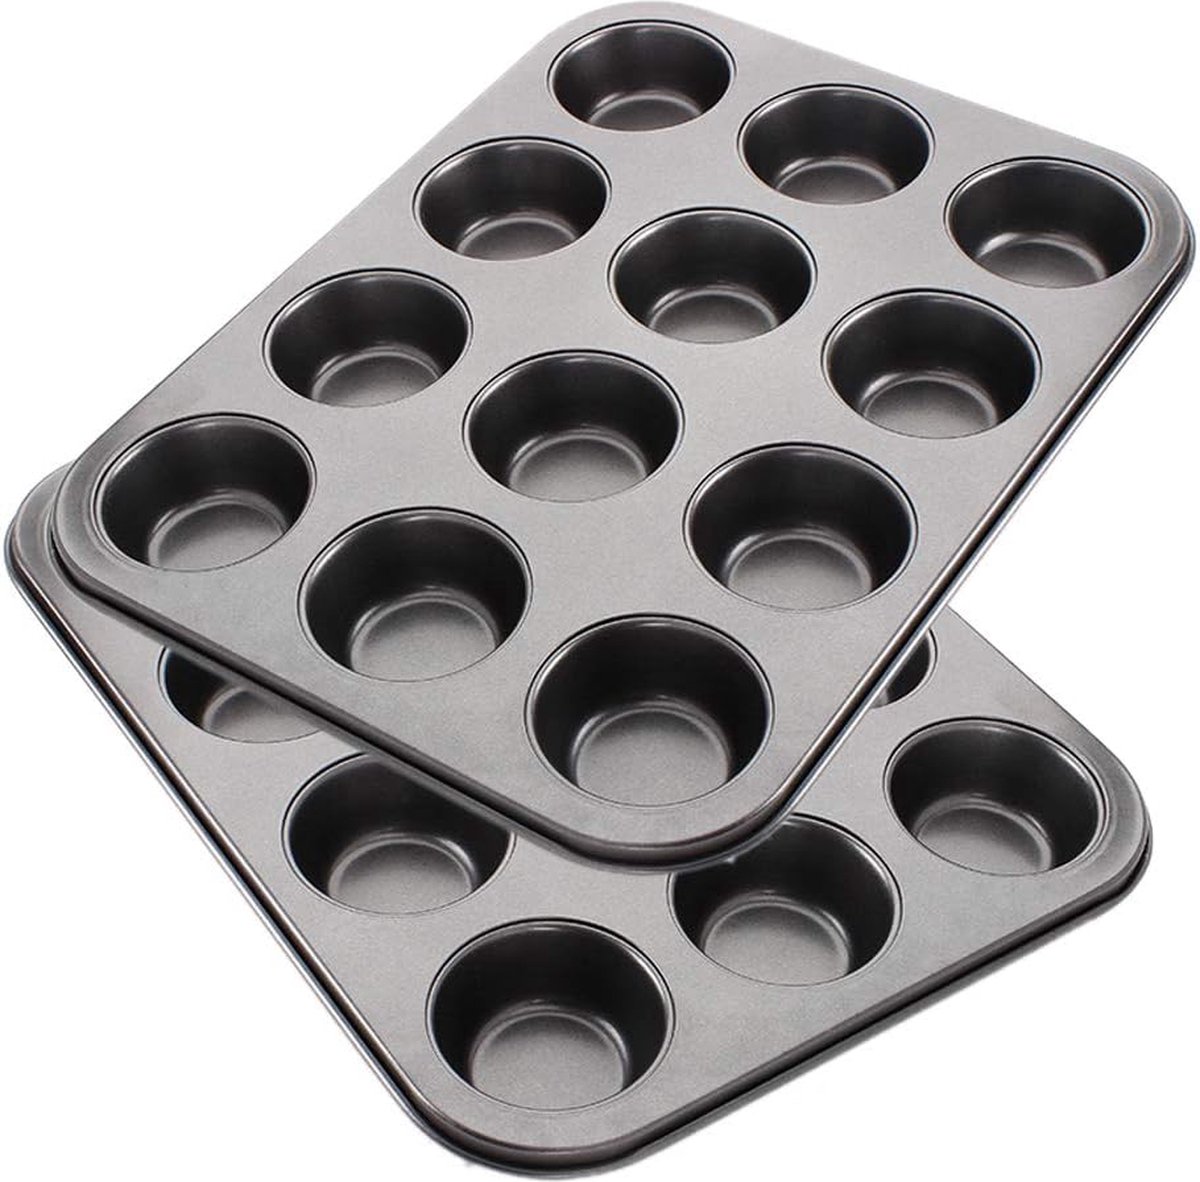 Bakplaat voor 12 muffins, muffinvorm met antiaanbaklaag voor muffins, muffinvormen, muffinbakvorm, cupcakevormen, koolstofstalen cakemal met een diameter van ongeveer 6,3 cm, verpakking van 2 stuks.